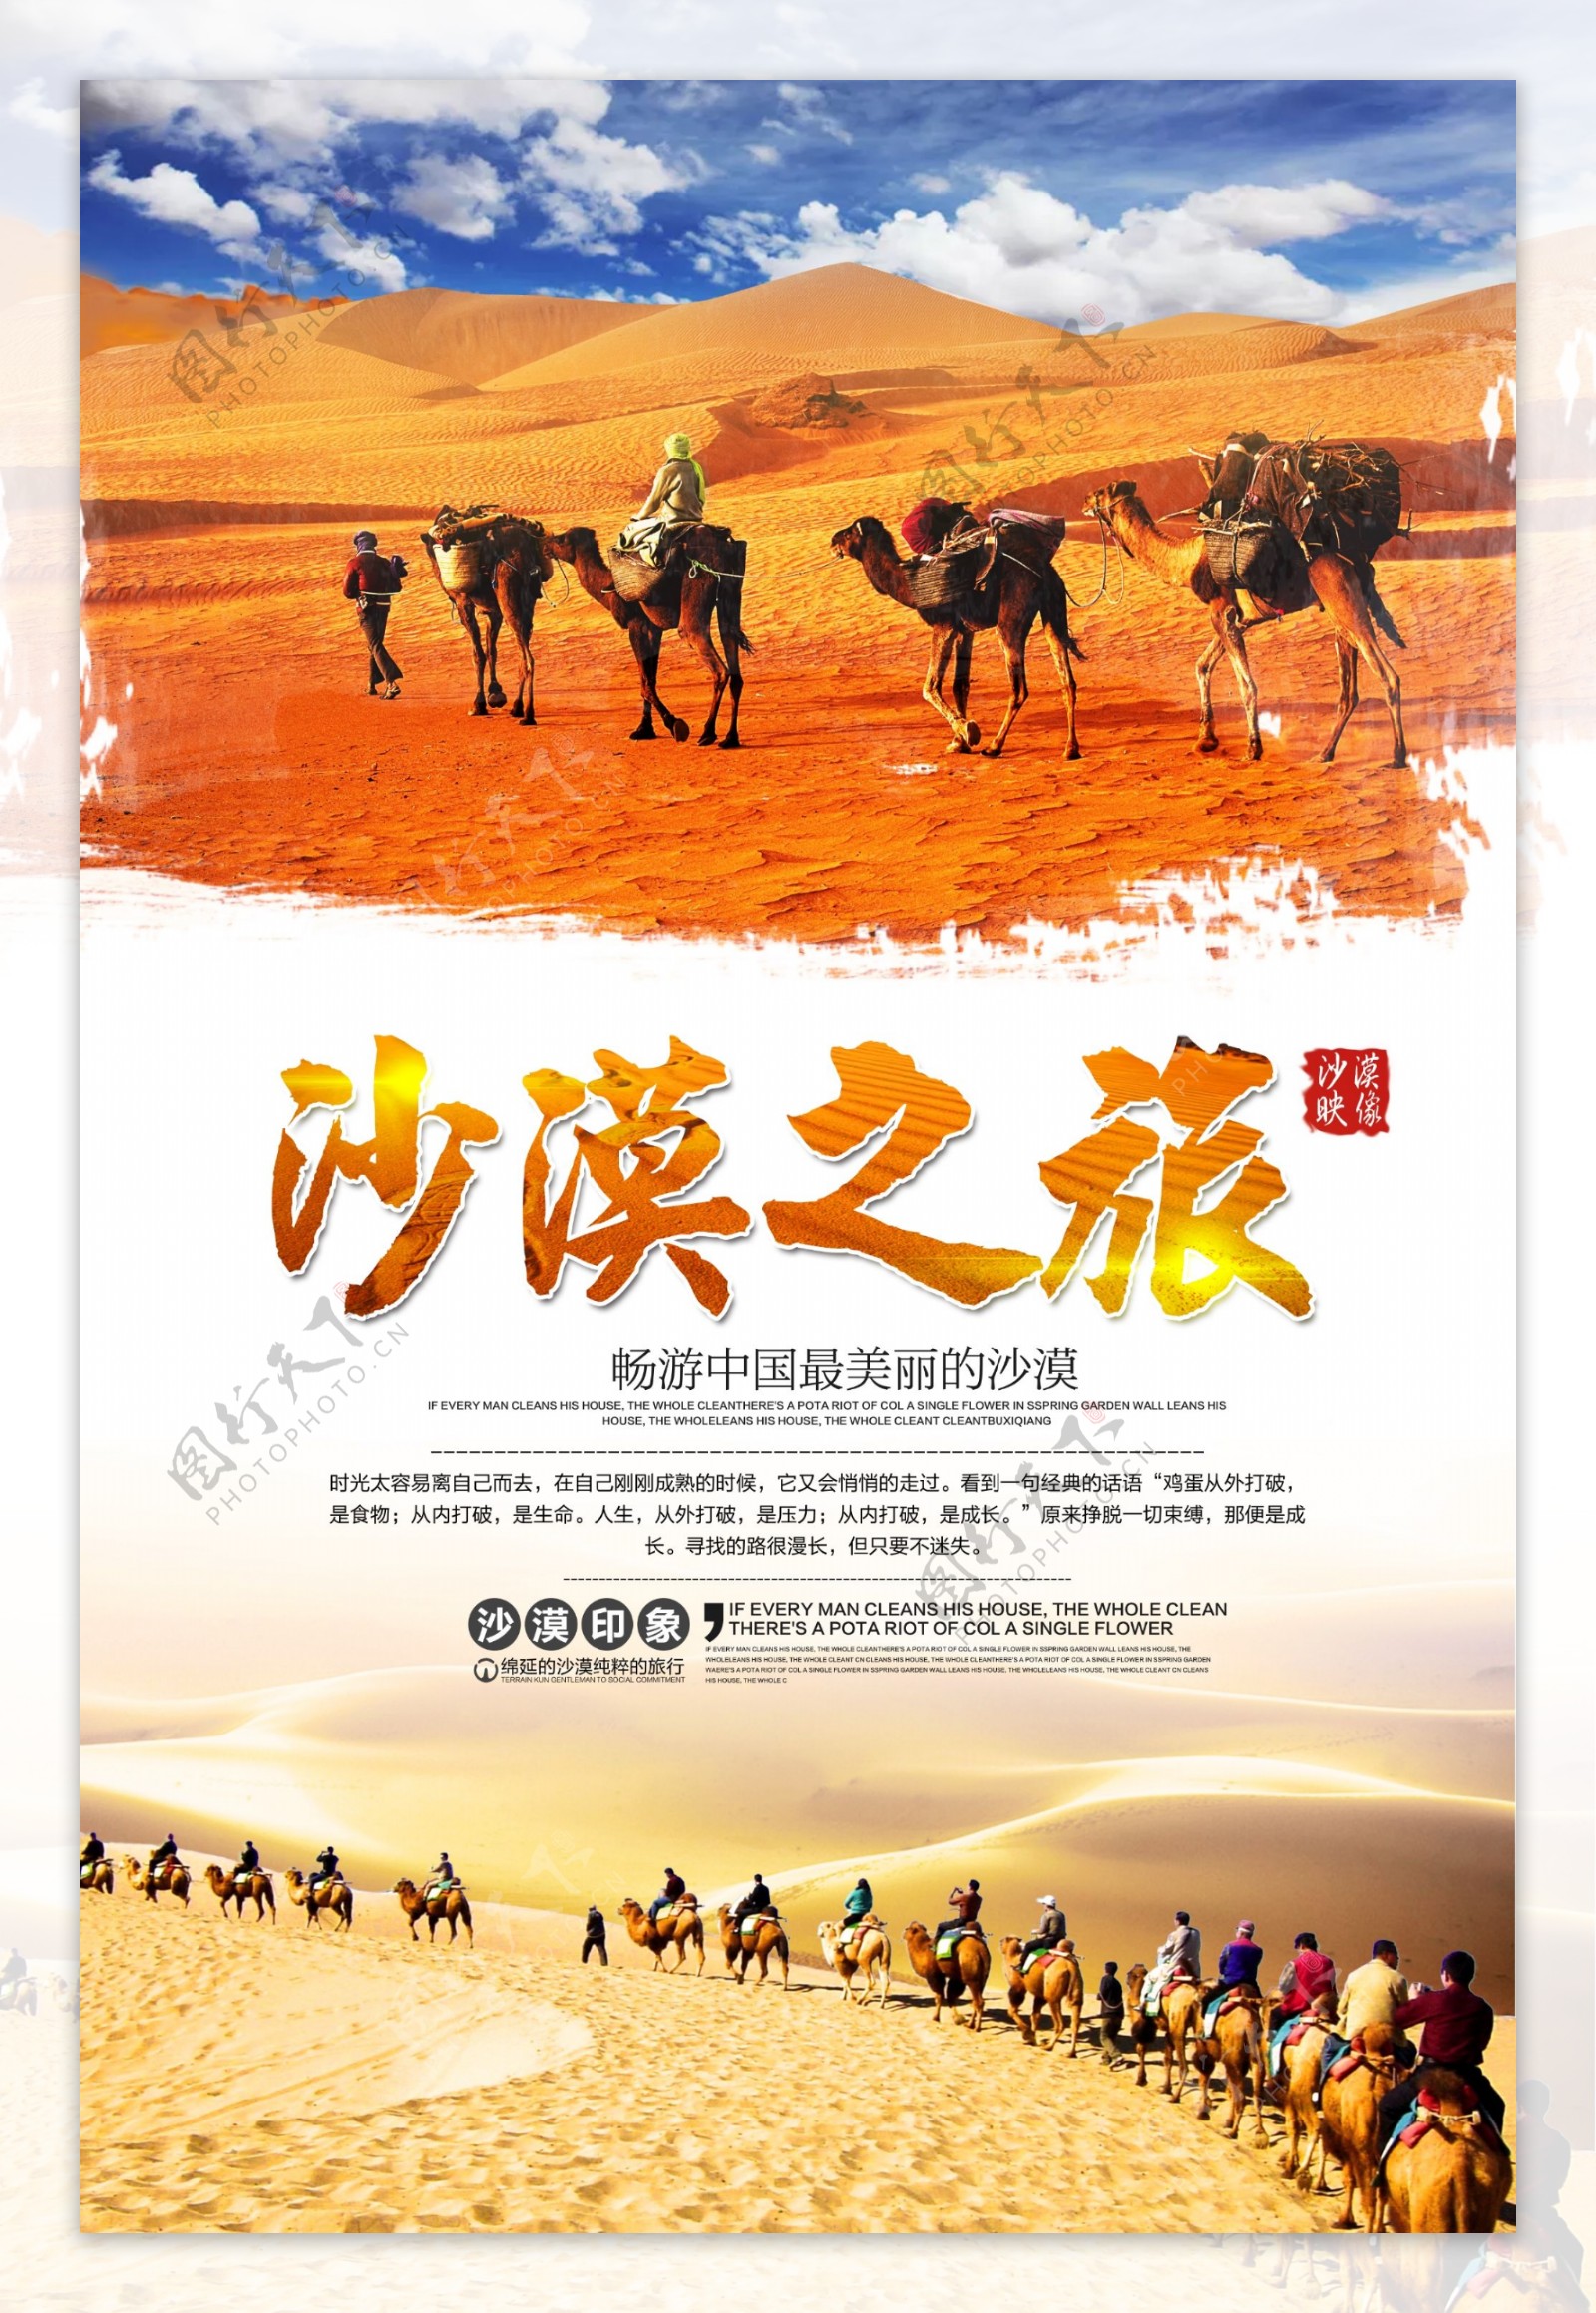 沙漠旅游宣传海报设计